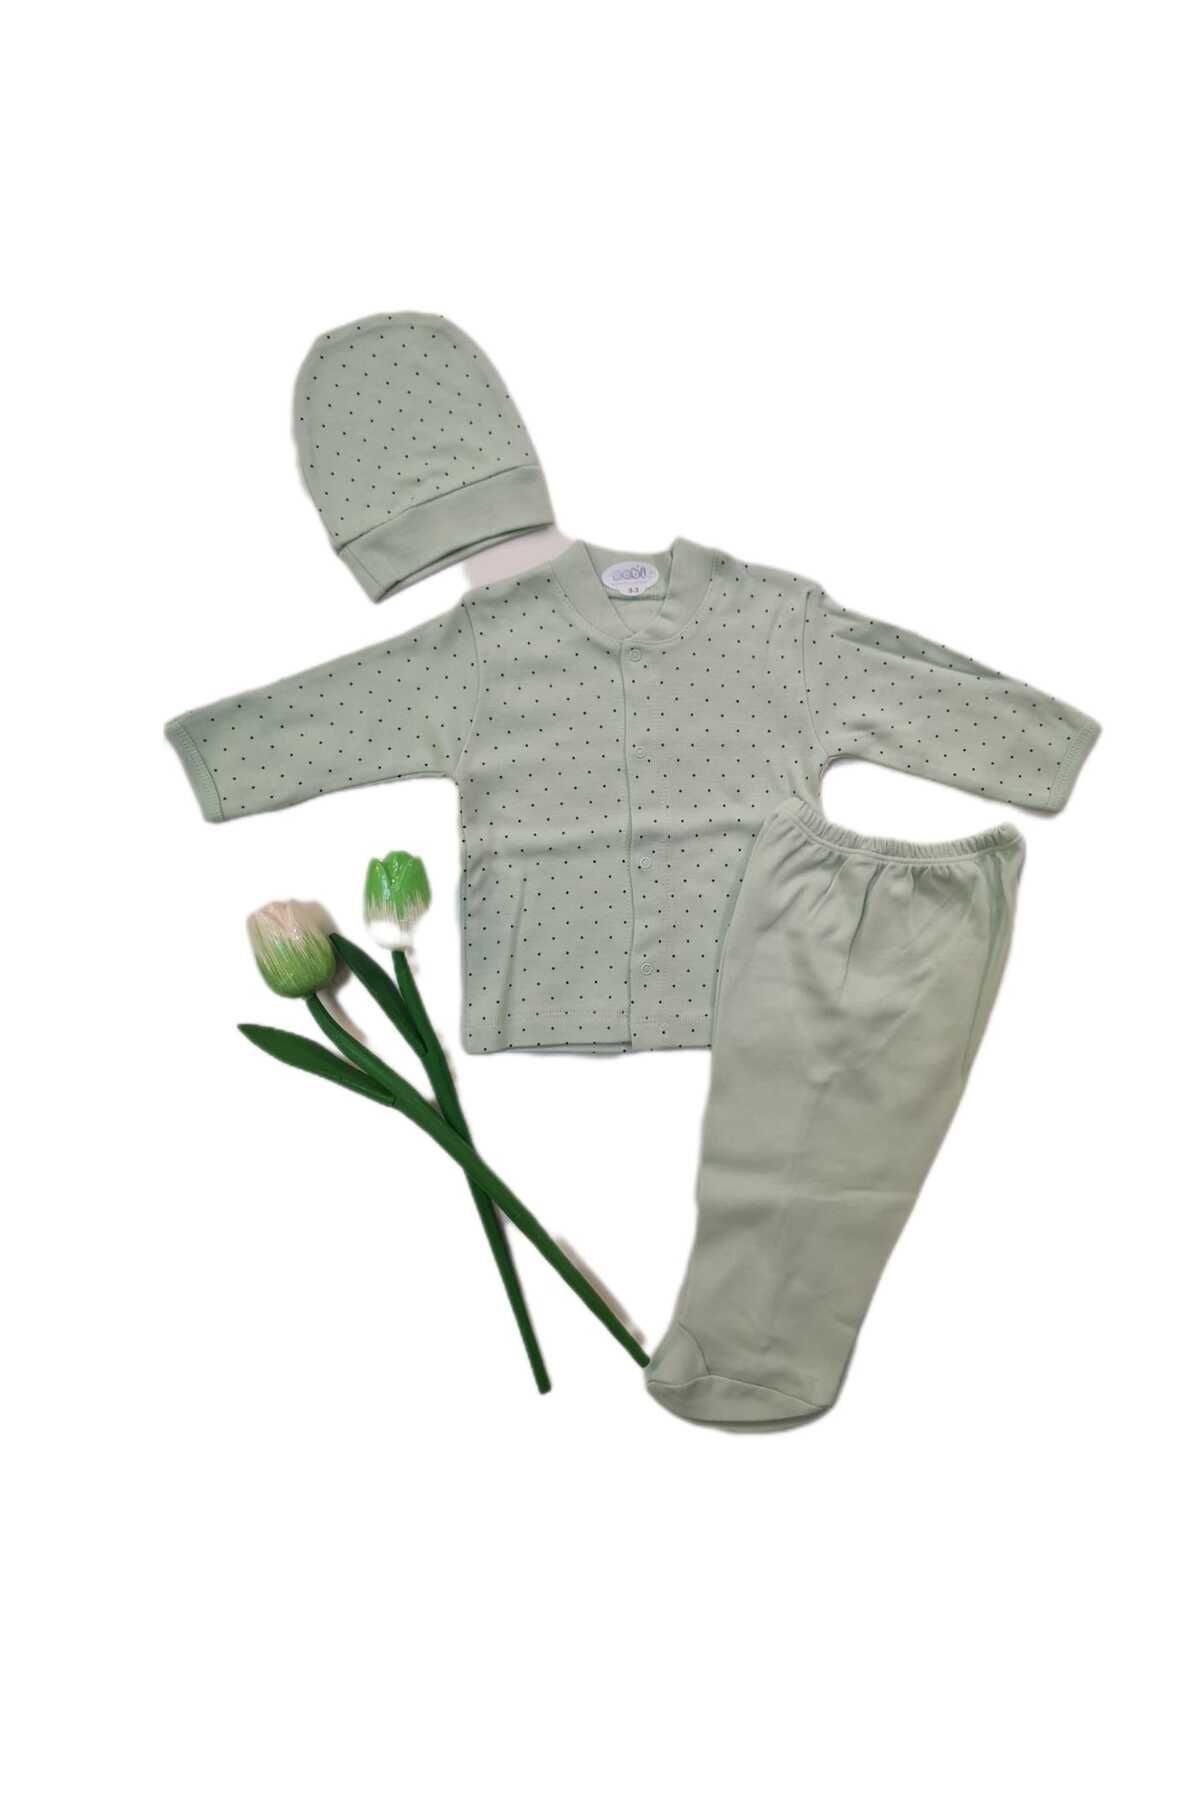 Sebi Bebe Bebek Pijama Takımı 0-3 ay (yeşil)